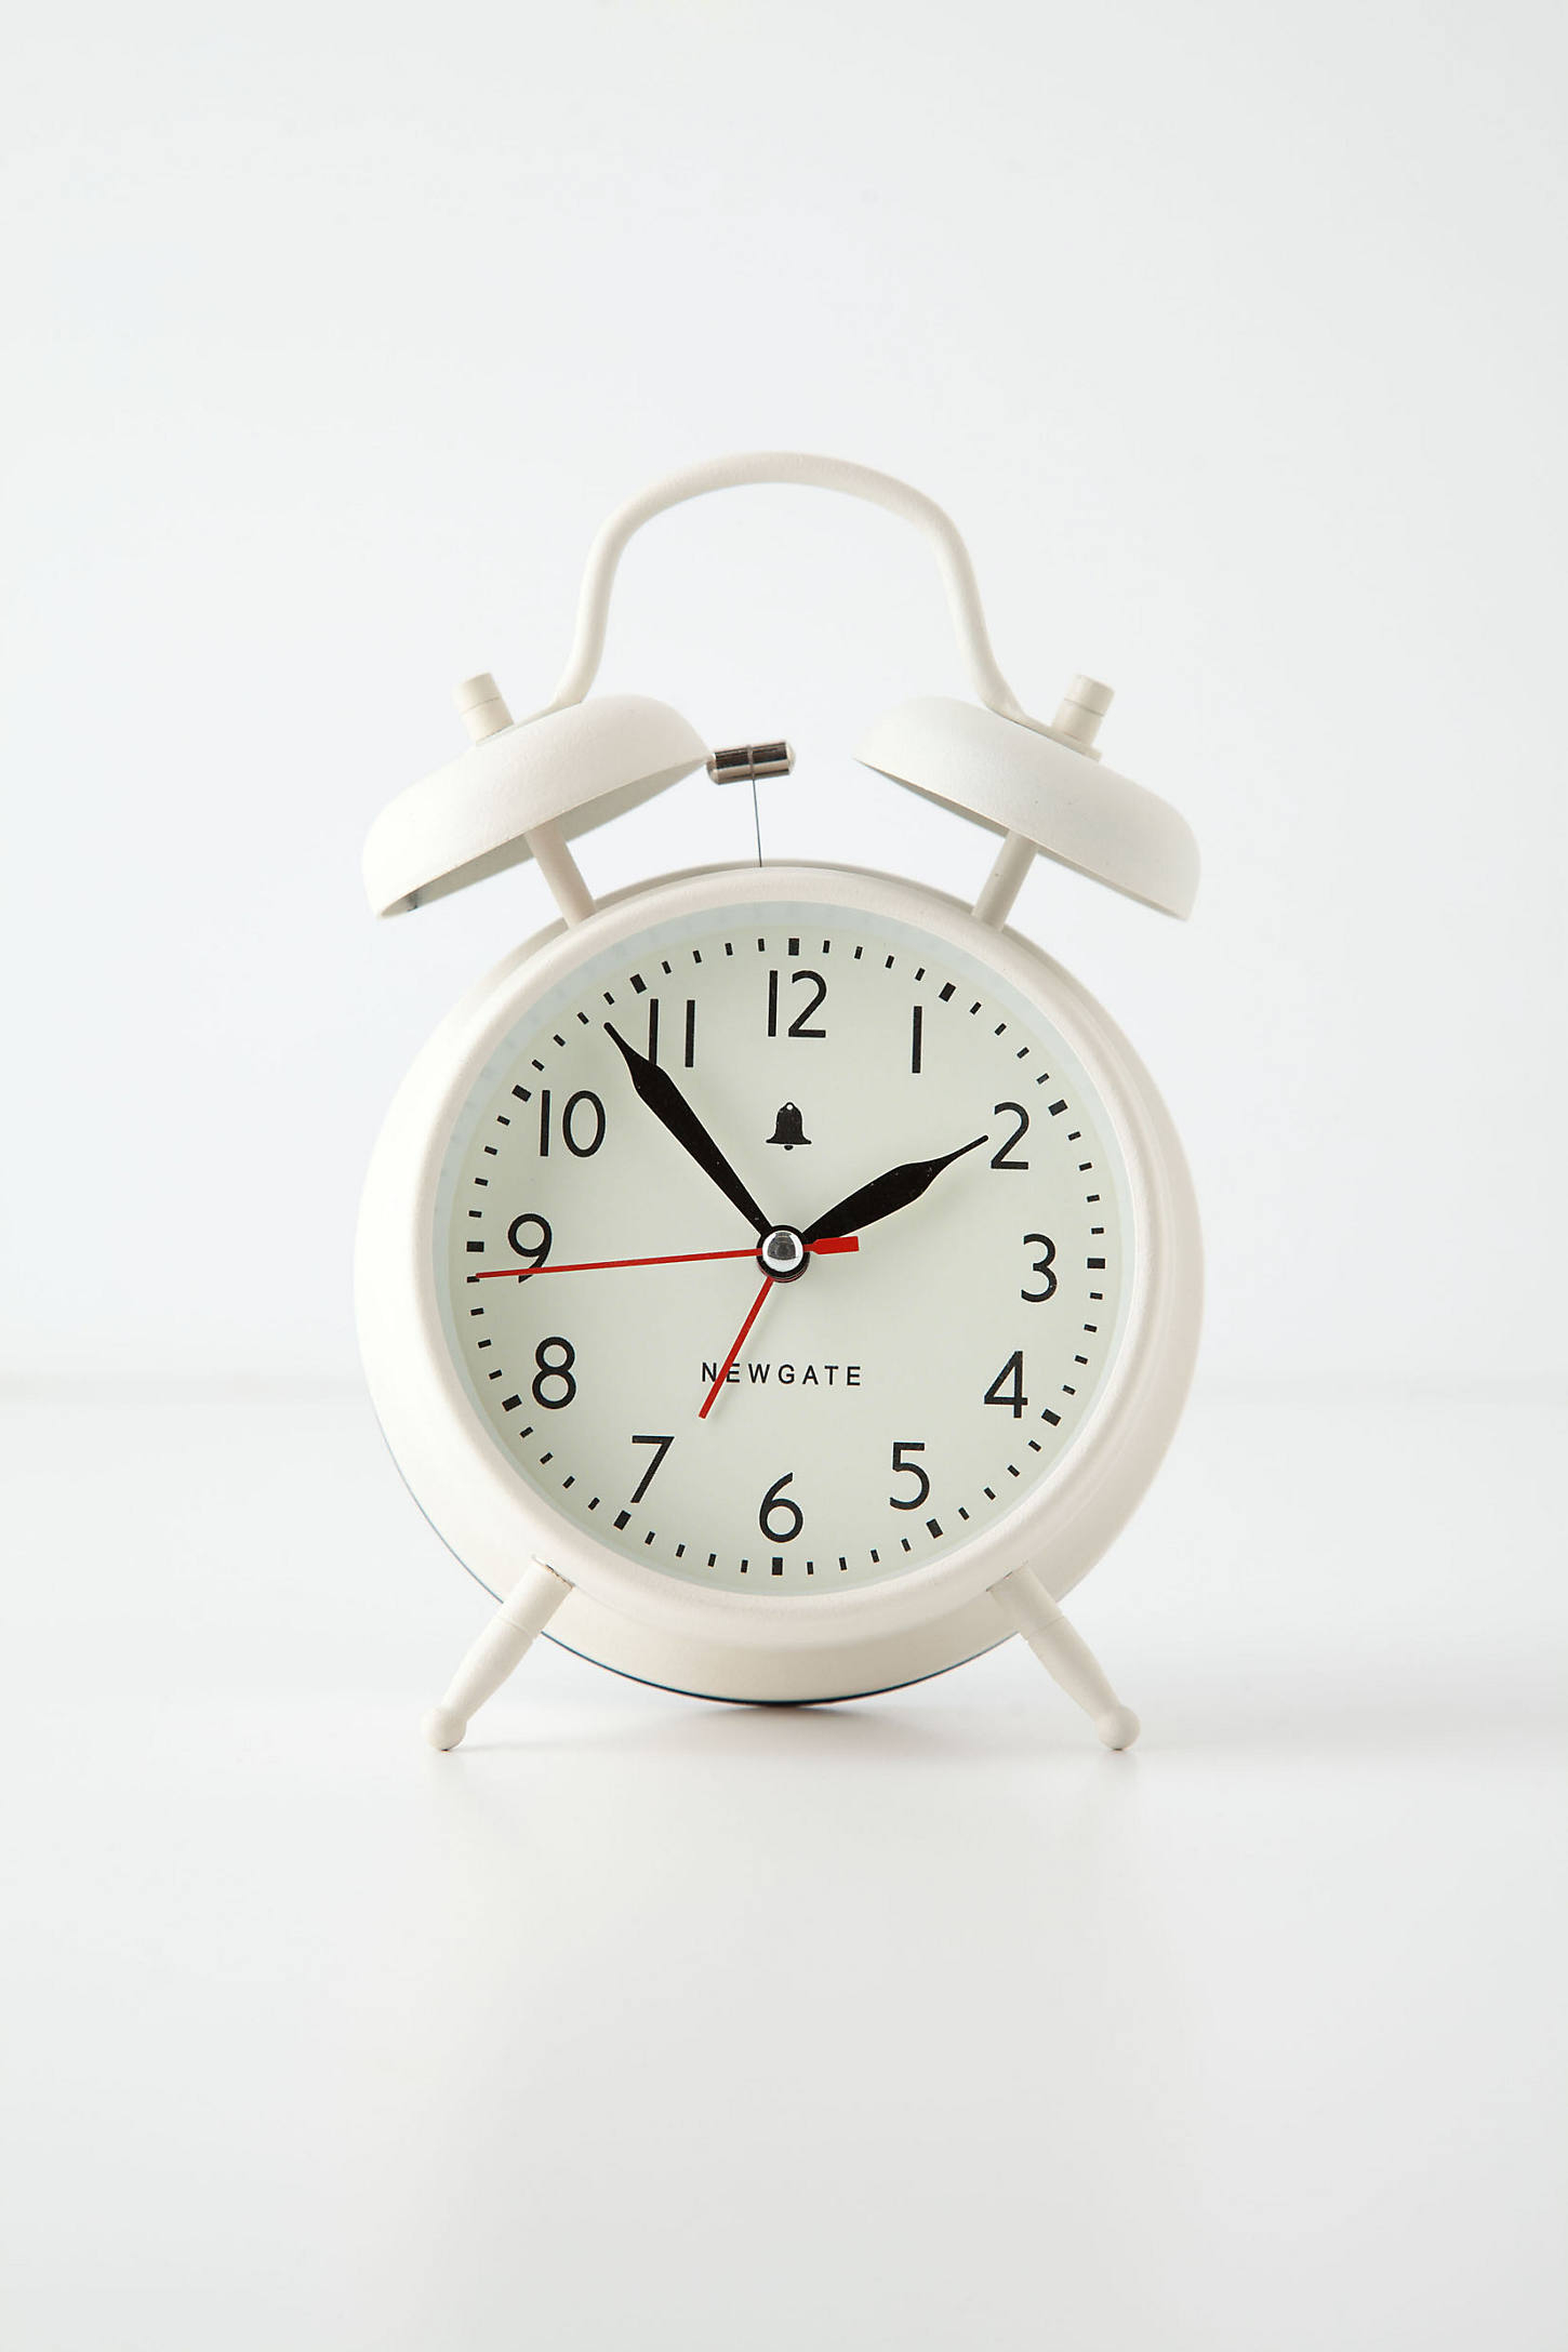 Covent Alarm Clock - Anthropologie